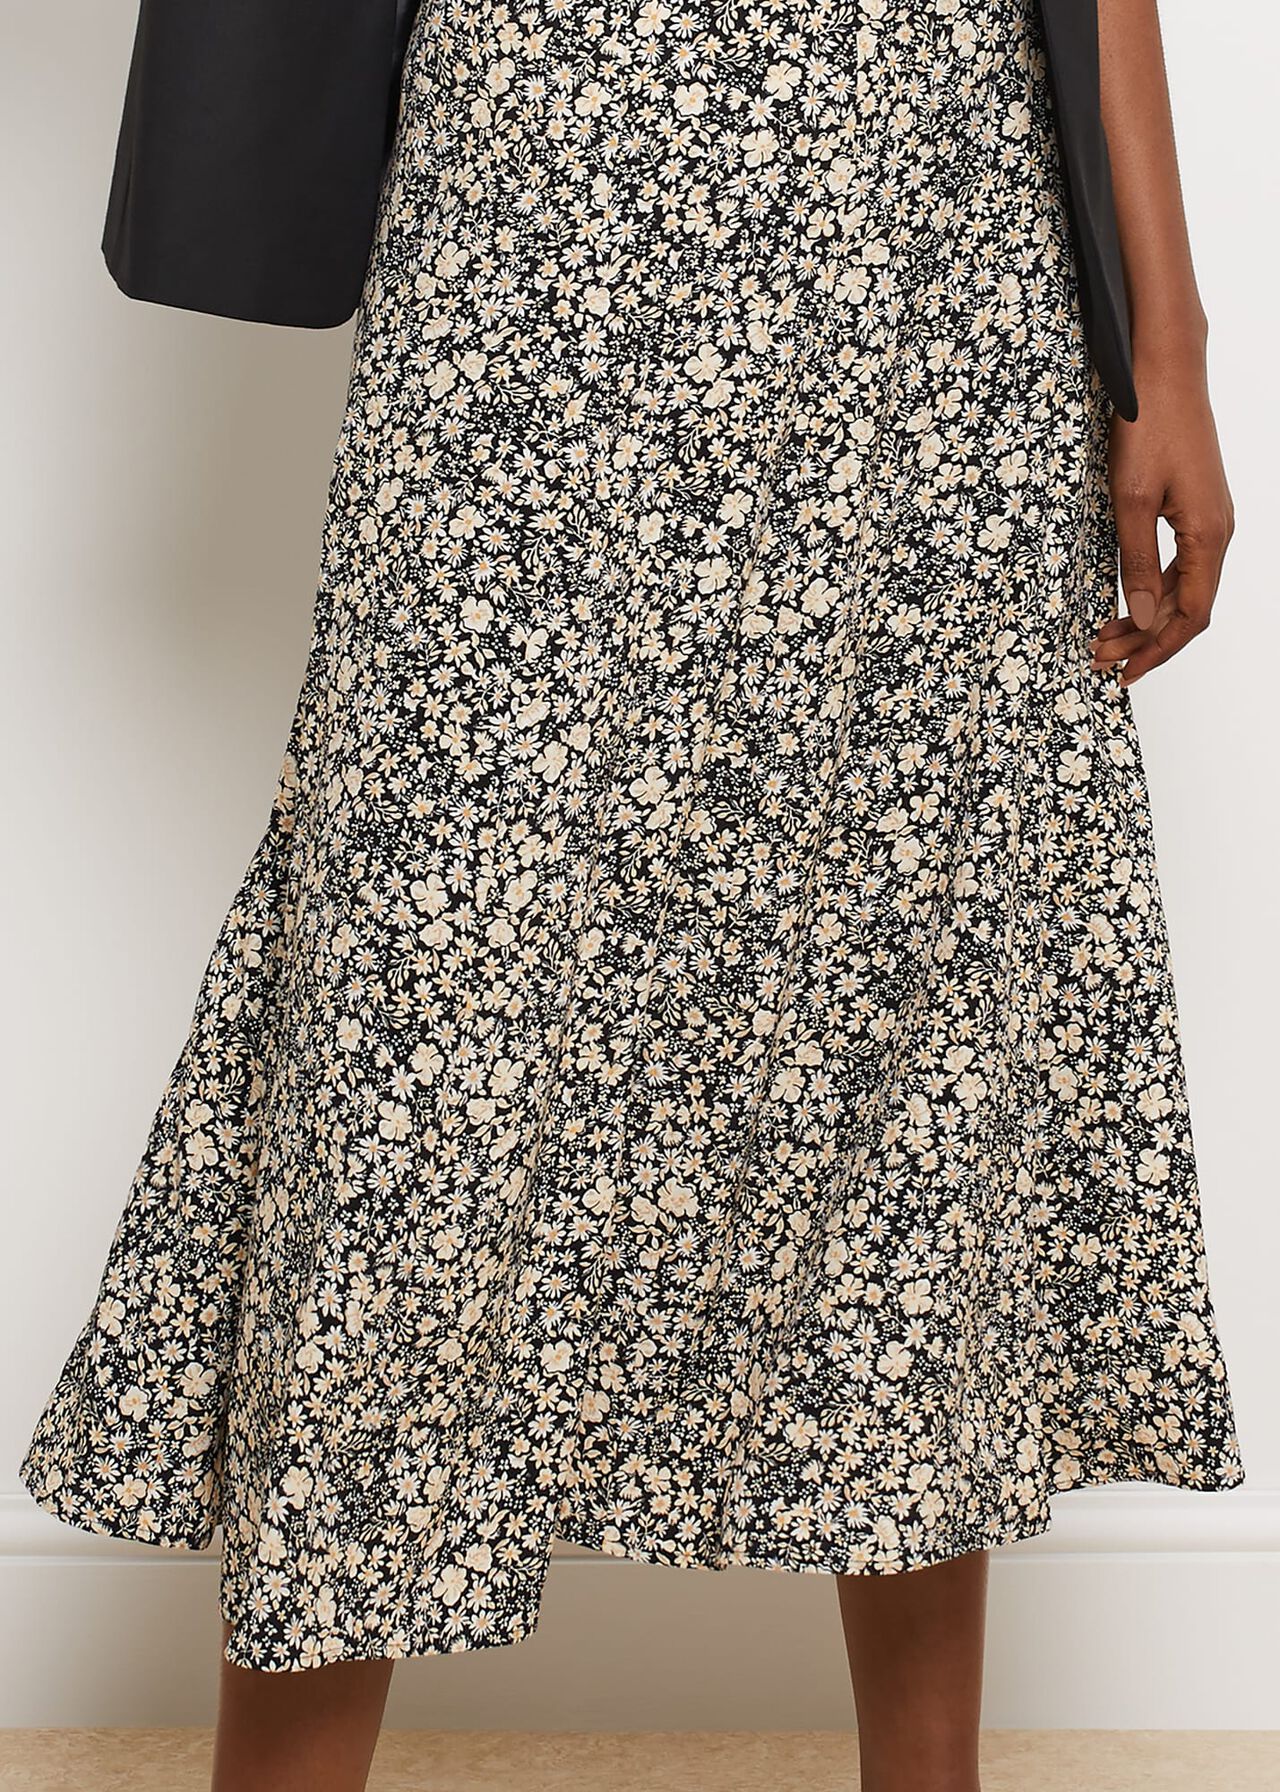 Conway Skirt, Black Multi, hi-res